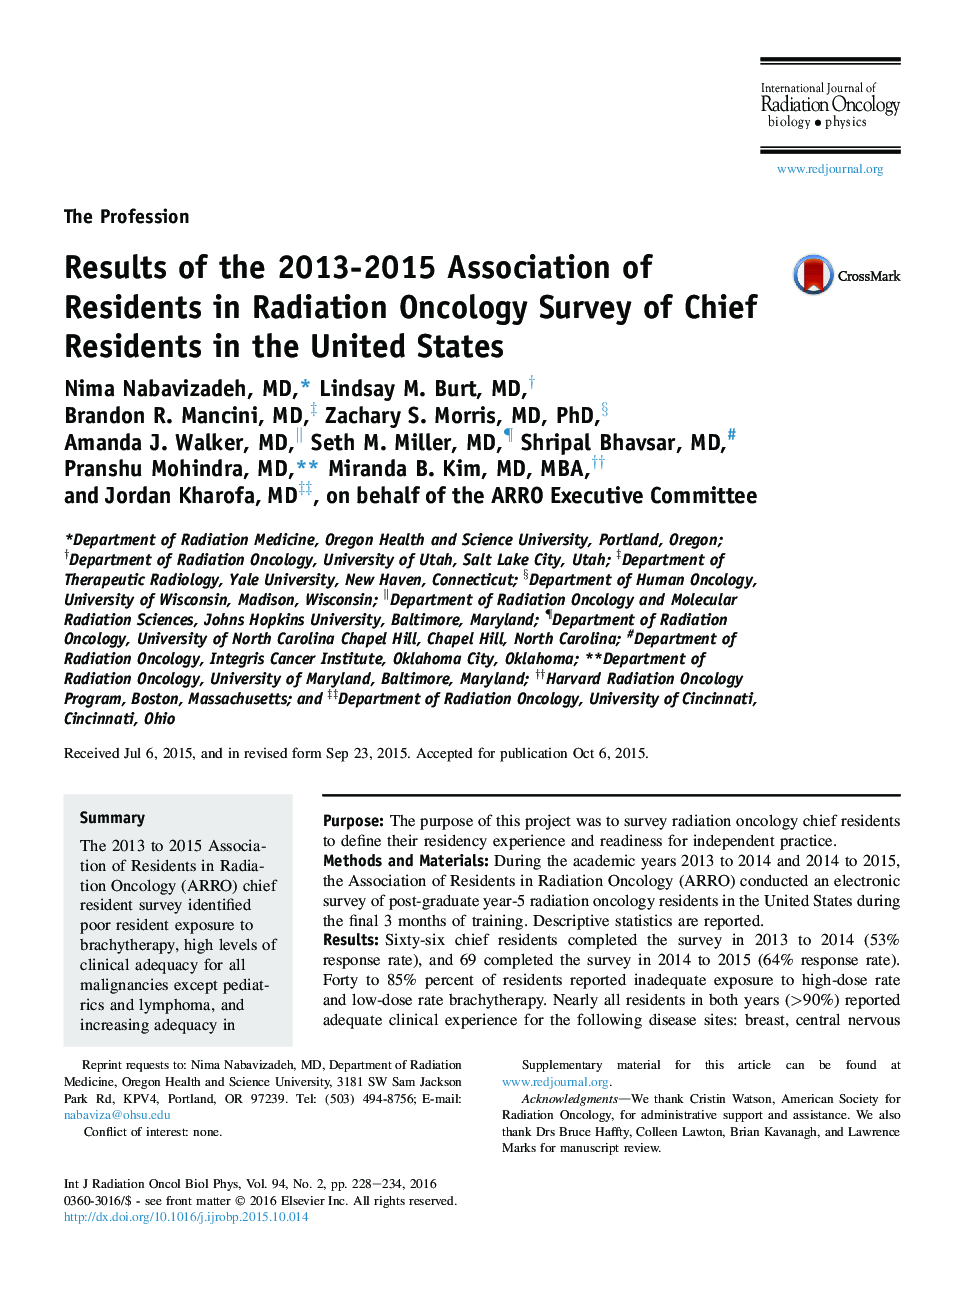 نتایج انجمن جمعیت در سال 2013-2015 در بررسی سرطان های رادیویی در ایالات متحده آمریکا 